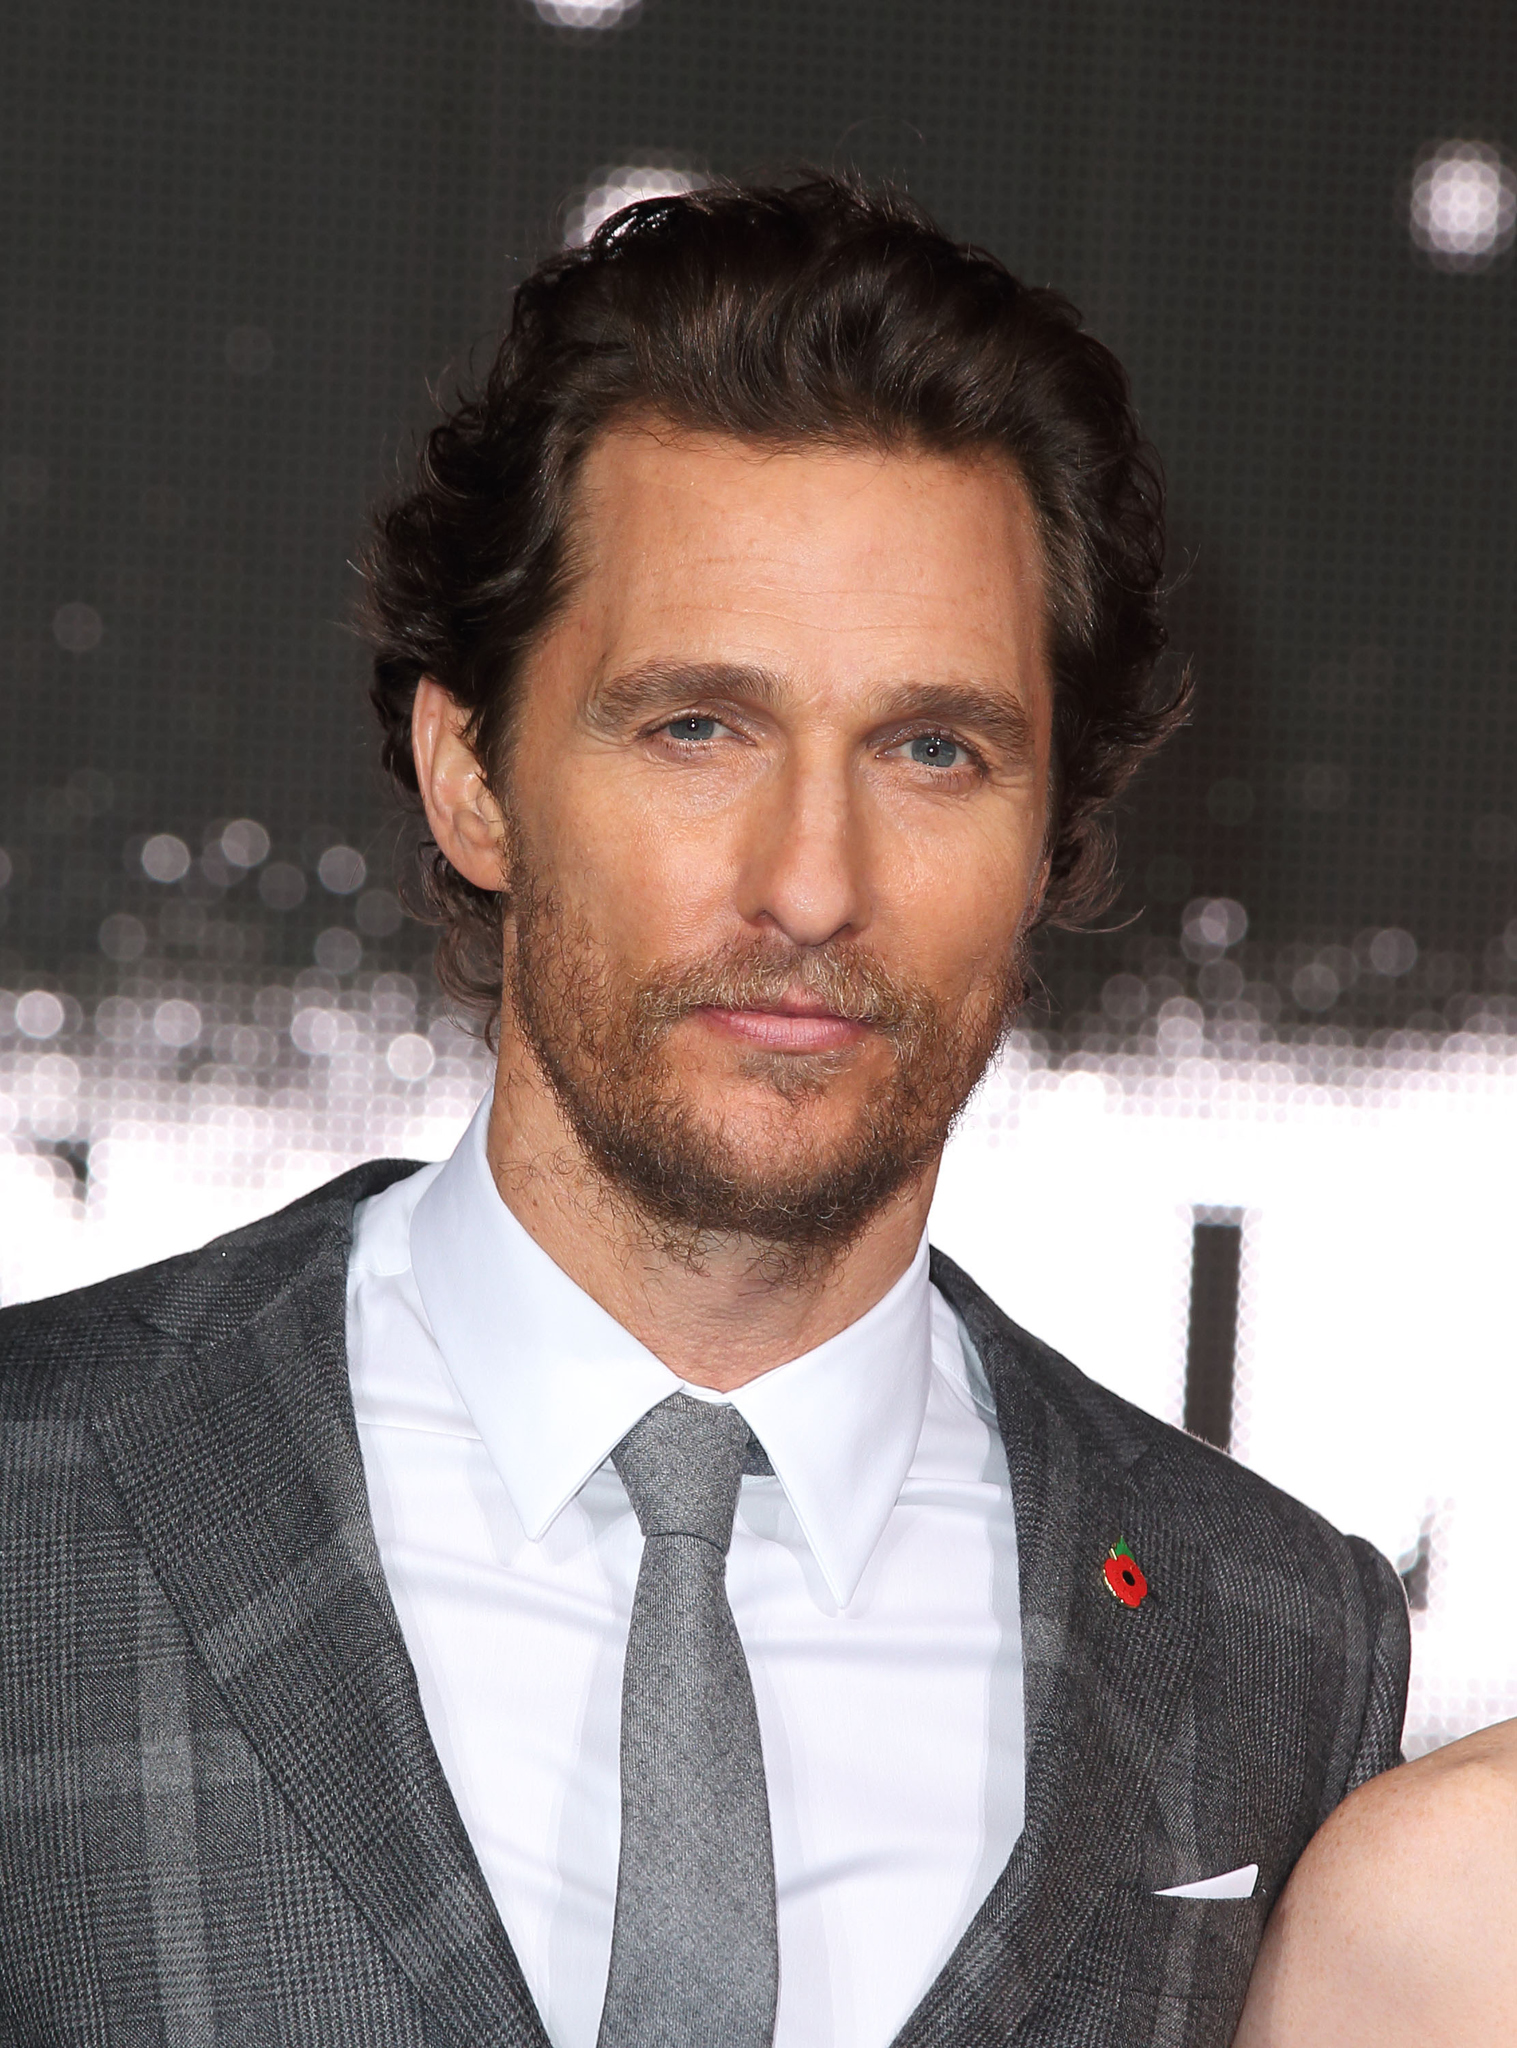 Matthew McConaughey at event of Tarp zvaigzdziu (2014)